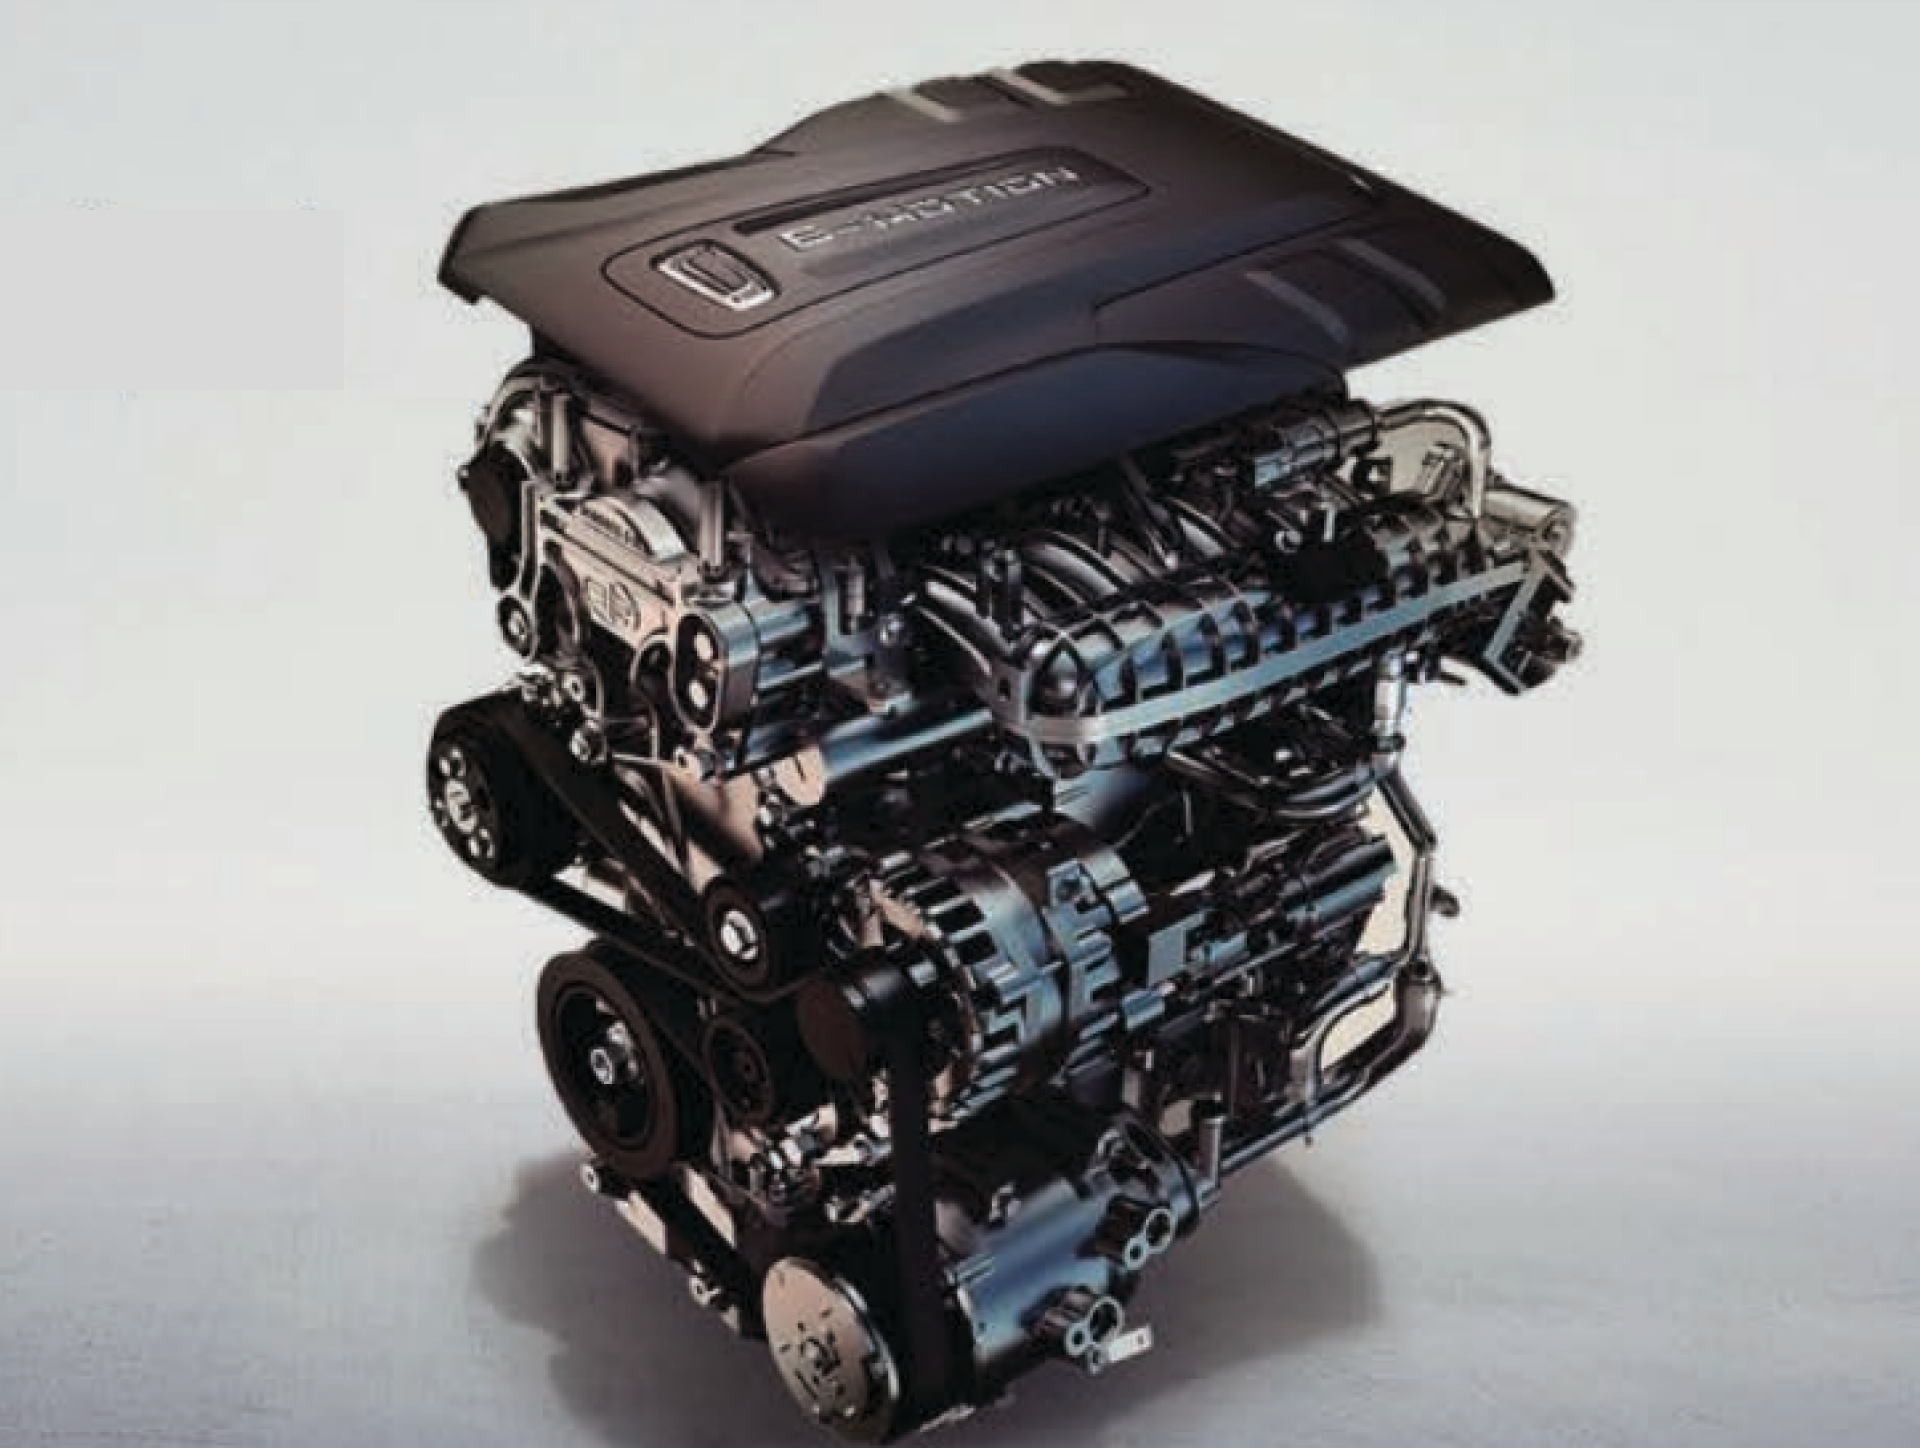 224HP Turbocharged Engine